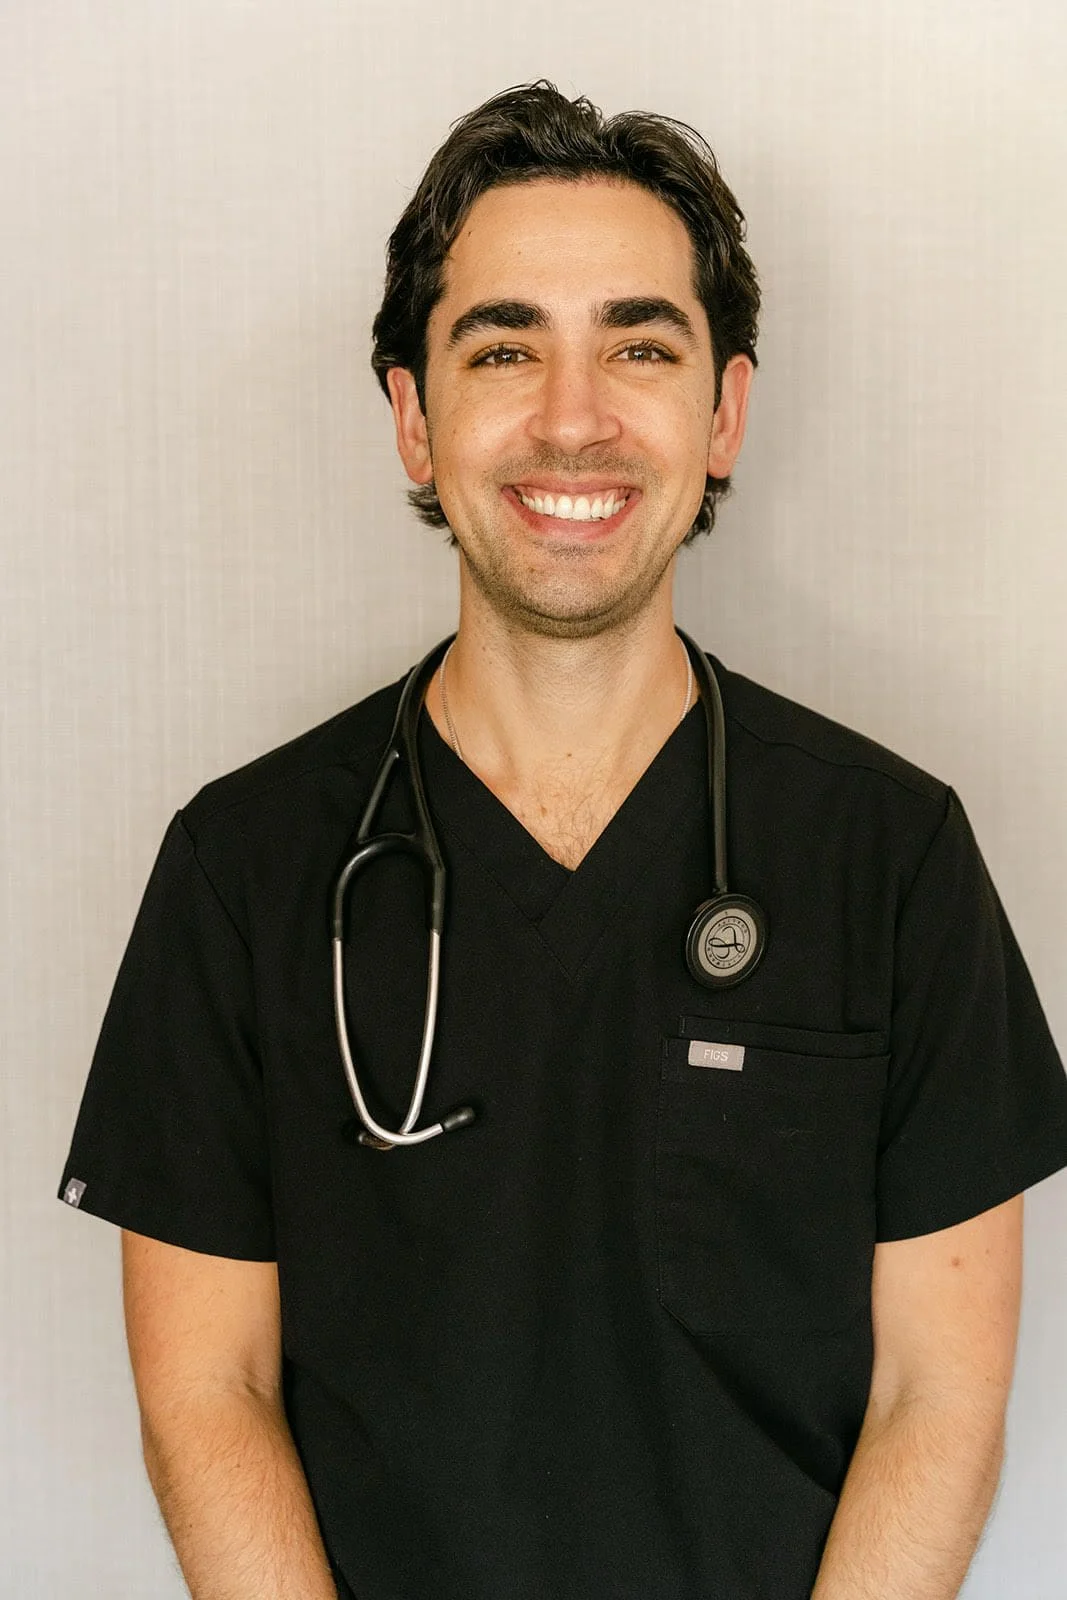 Dr. Morgan Tannenbaum